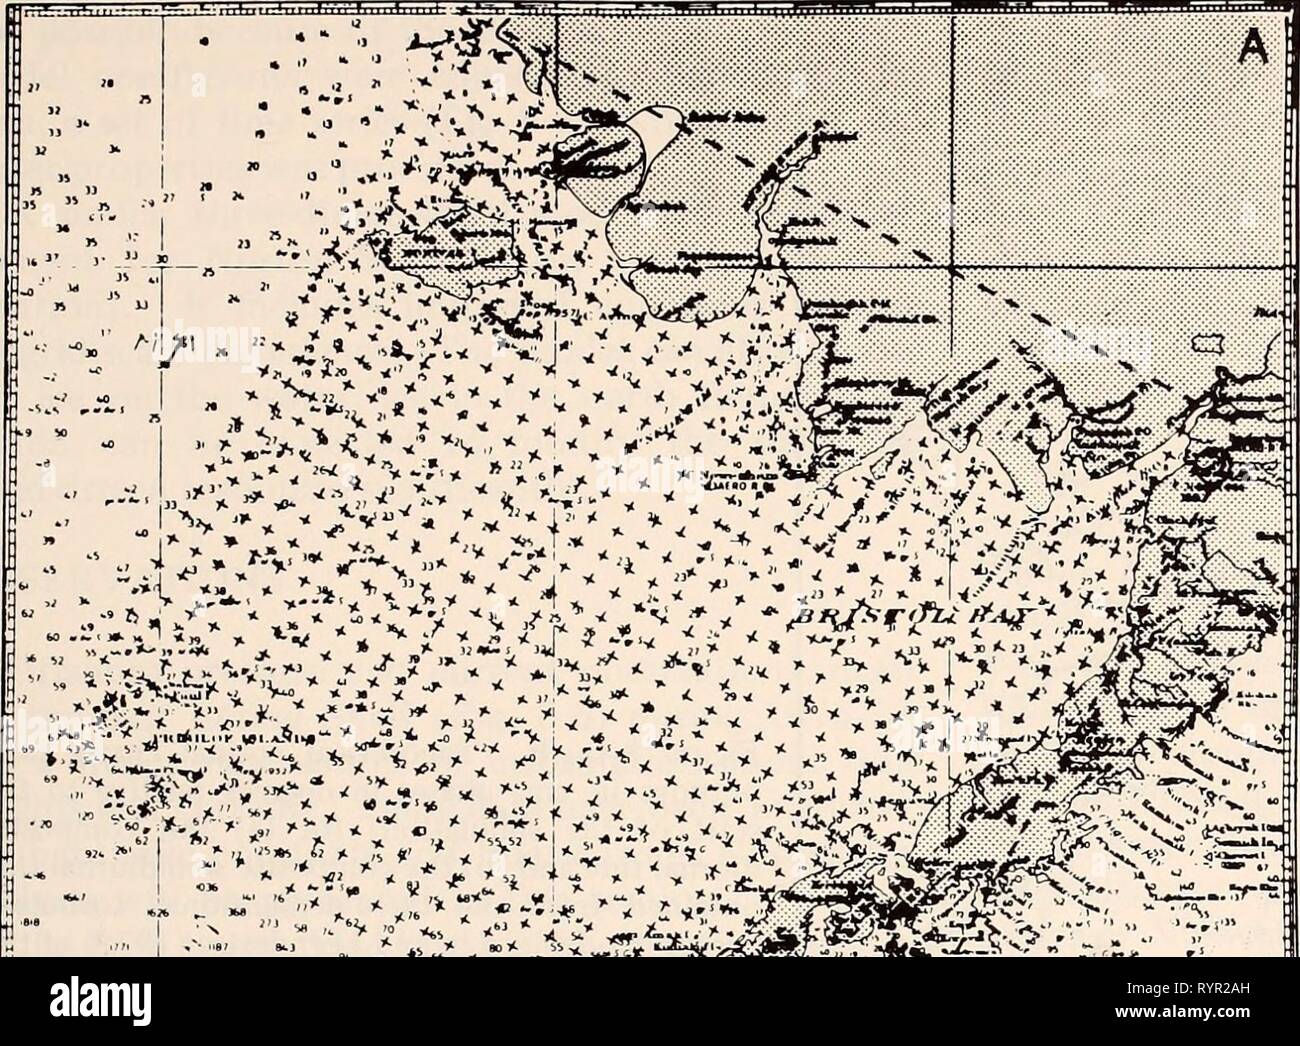 La parte orientale del Mare di Bering ripiano la parte orientale del Mare di Bering ripiano : oceanografia e risorse / a cura di Donald W. cofano e John A. Calder . easternberings00cofano Anno: 1981 170' 165' 160' 60* 55-i %%%%%%%%.  ^-^-" "C^". . '^Â£^â"'^i&GT;p!^^ â ^^â &gt;^c--^-^.- âM., figura 8-3a, b. (A) La griglia orizzontale e (b) una vista in sezione che mostra la griglia verticale della tridimensionale, energia turbolenta modello del sud- orientale ripiano di Bering da Liu e Leendertse (1978, 1979). La hori- orizzontale la spaziatura della griglia è di 21.82 km; la spaziatura verticale in questo 14-layer model è variabile per consentire ad alta risoluzione nel Foto Stock